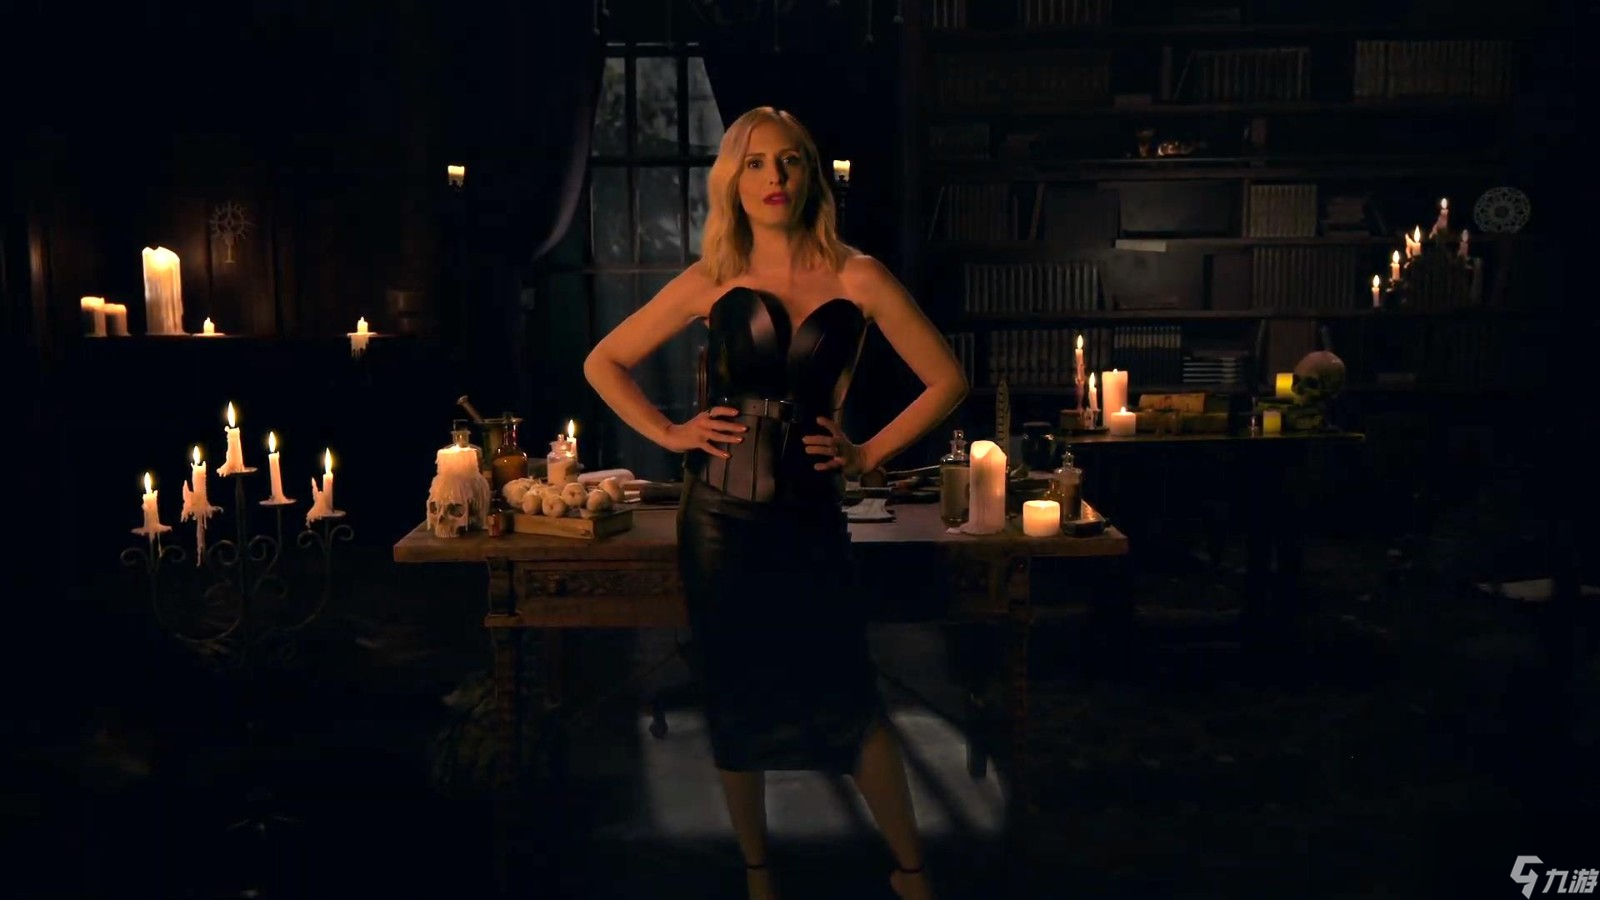 《暗黑4》吸血鬼猎人通缉活动预告 女星莎拉出镜